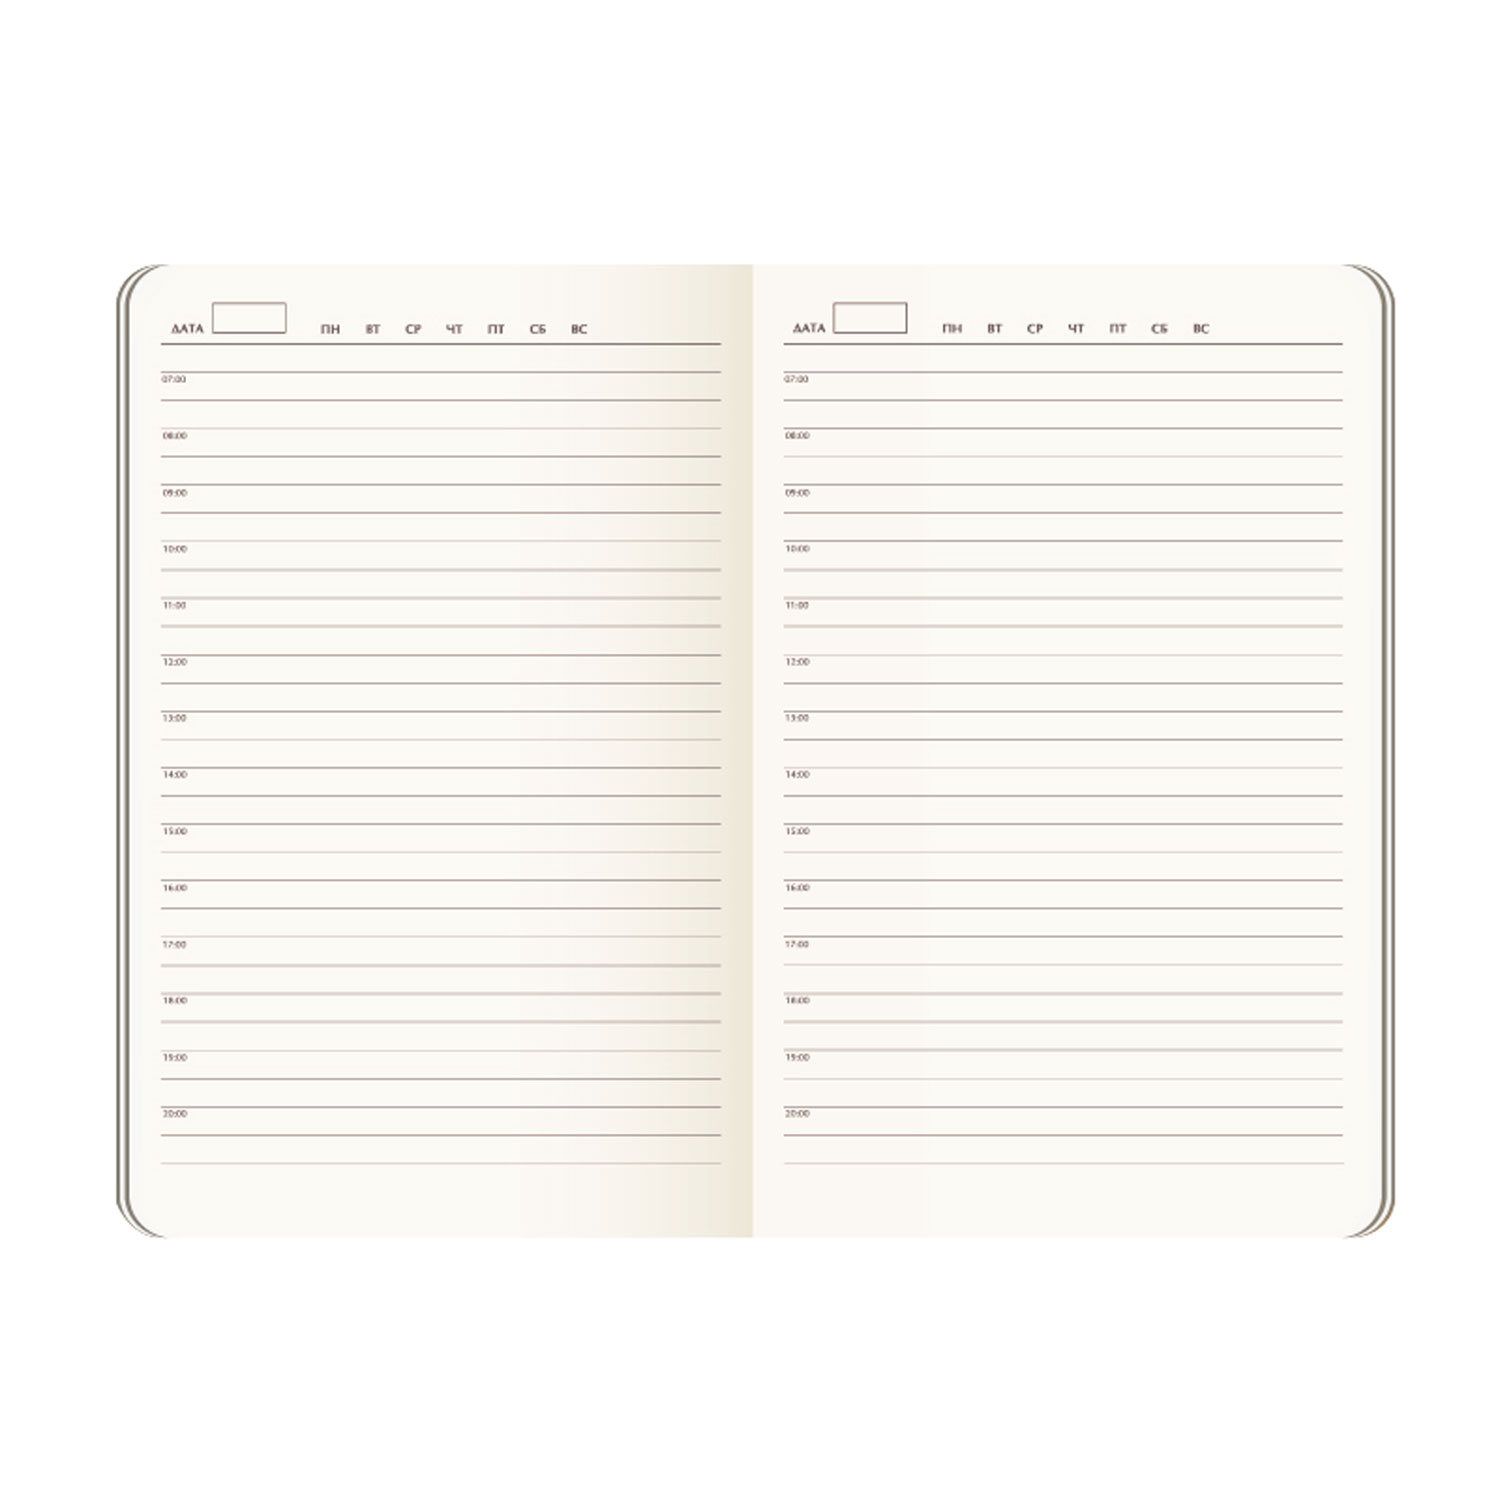 Ежедневник недатированный Vegas Btobook, серый (без упаковки, без стикера)